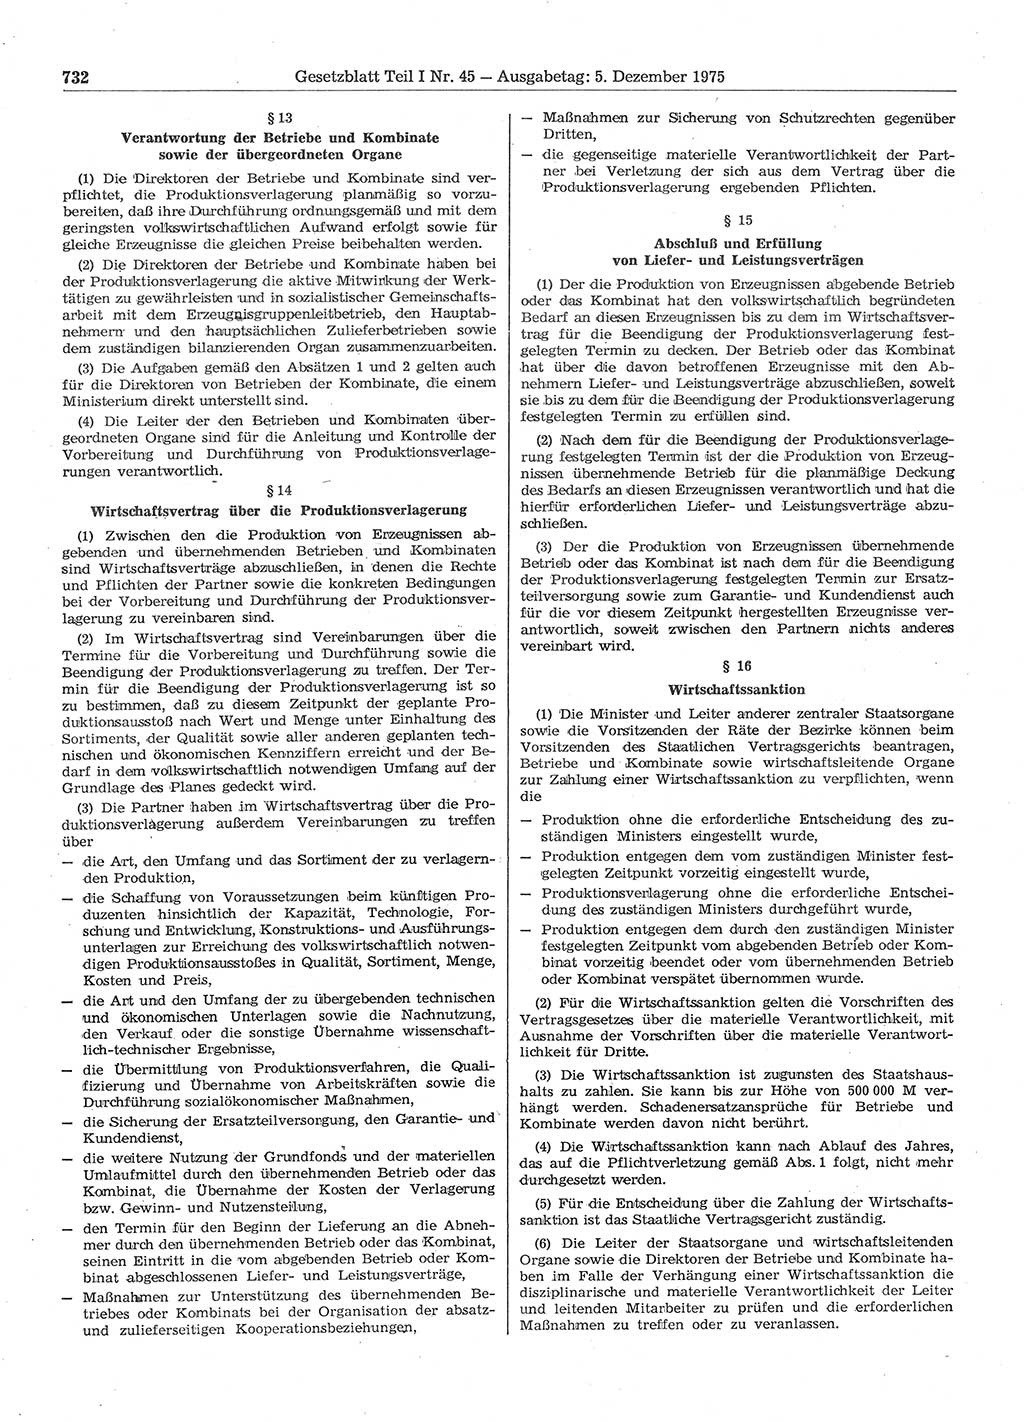 Gesetzblatt (GBl.) der Deutschen Demokratischen Republik (DDR) Teil Ⅰ 1975, Seite 732 (GBl. DDR Ⅰ 1975, S. 732)